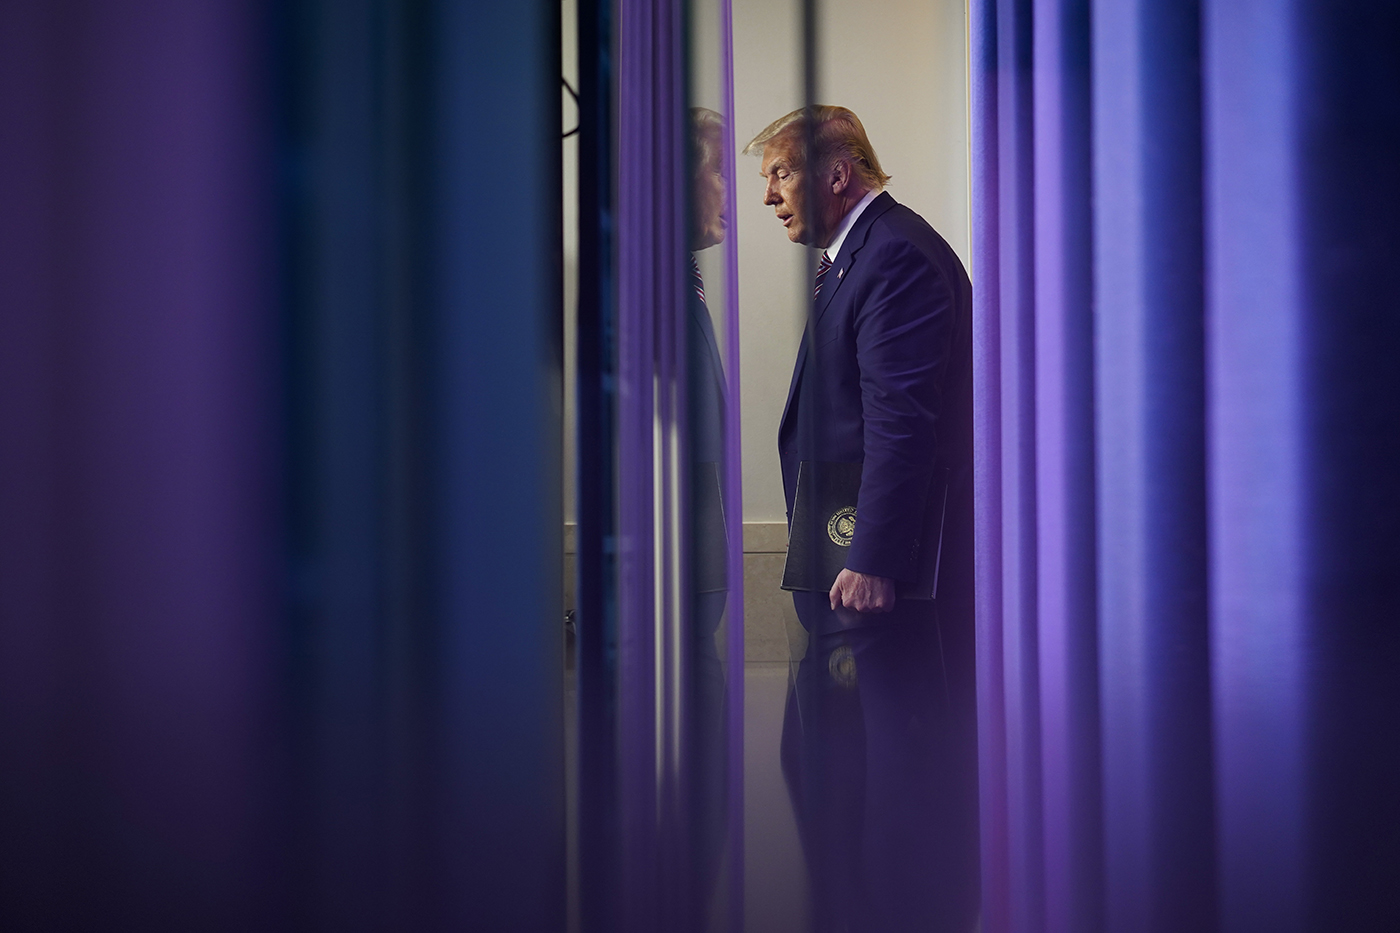 Trump walking down a hallway